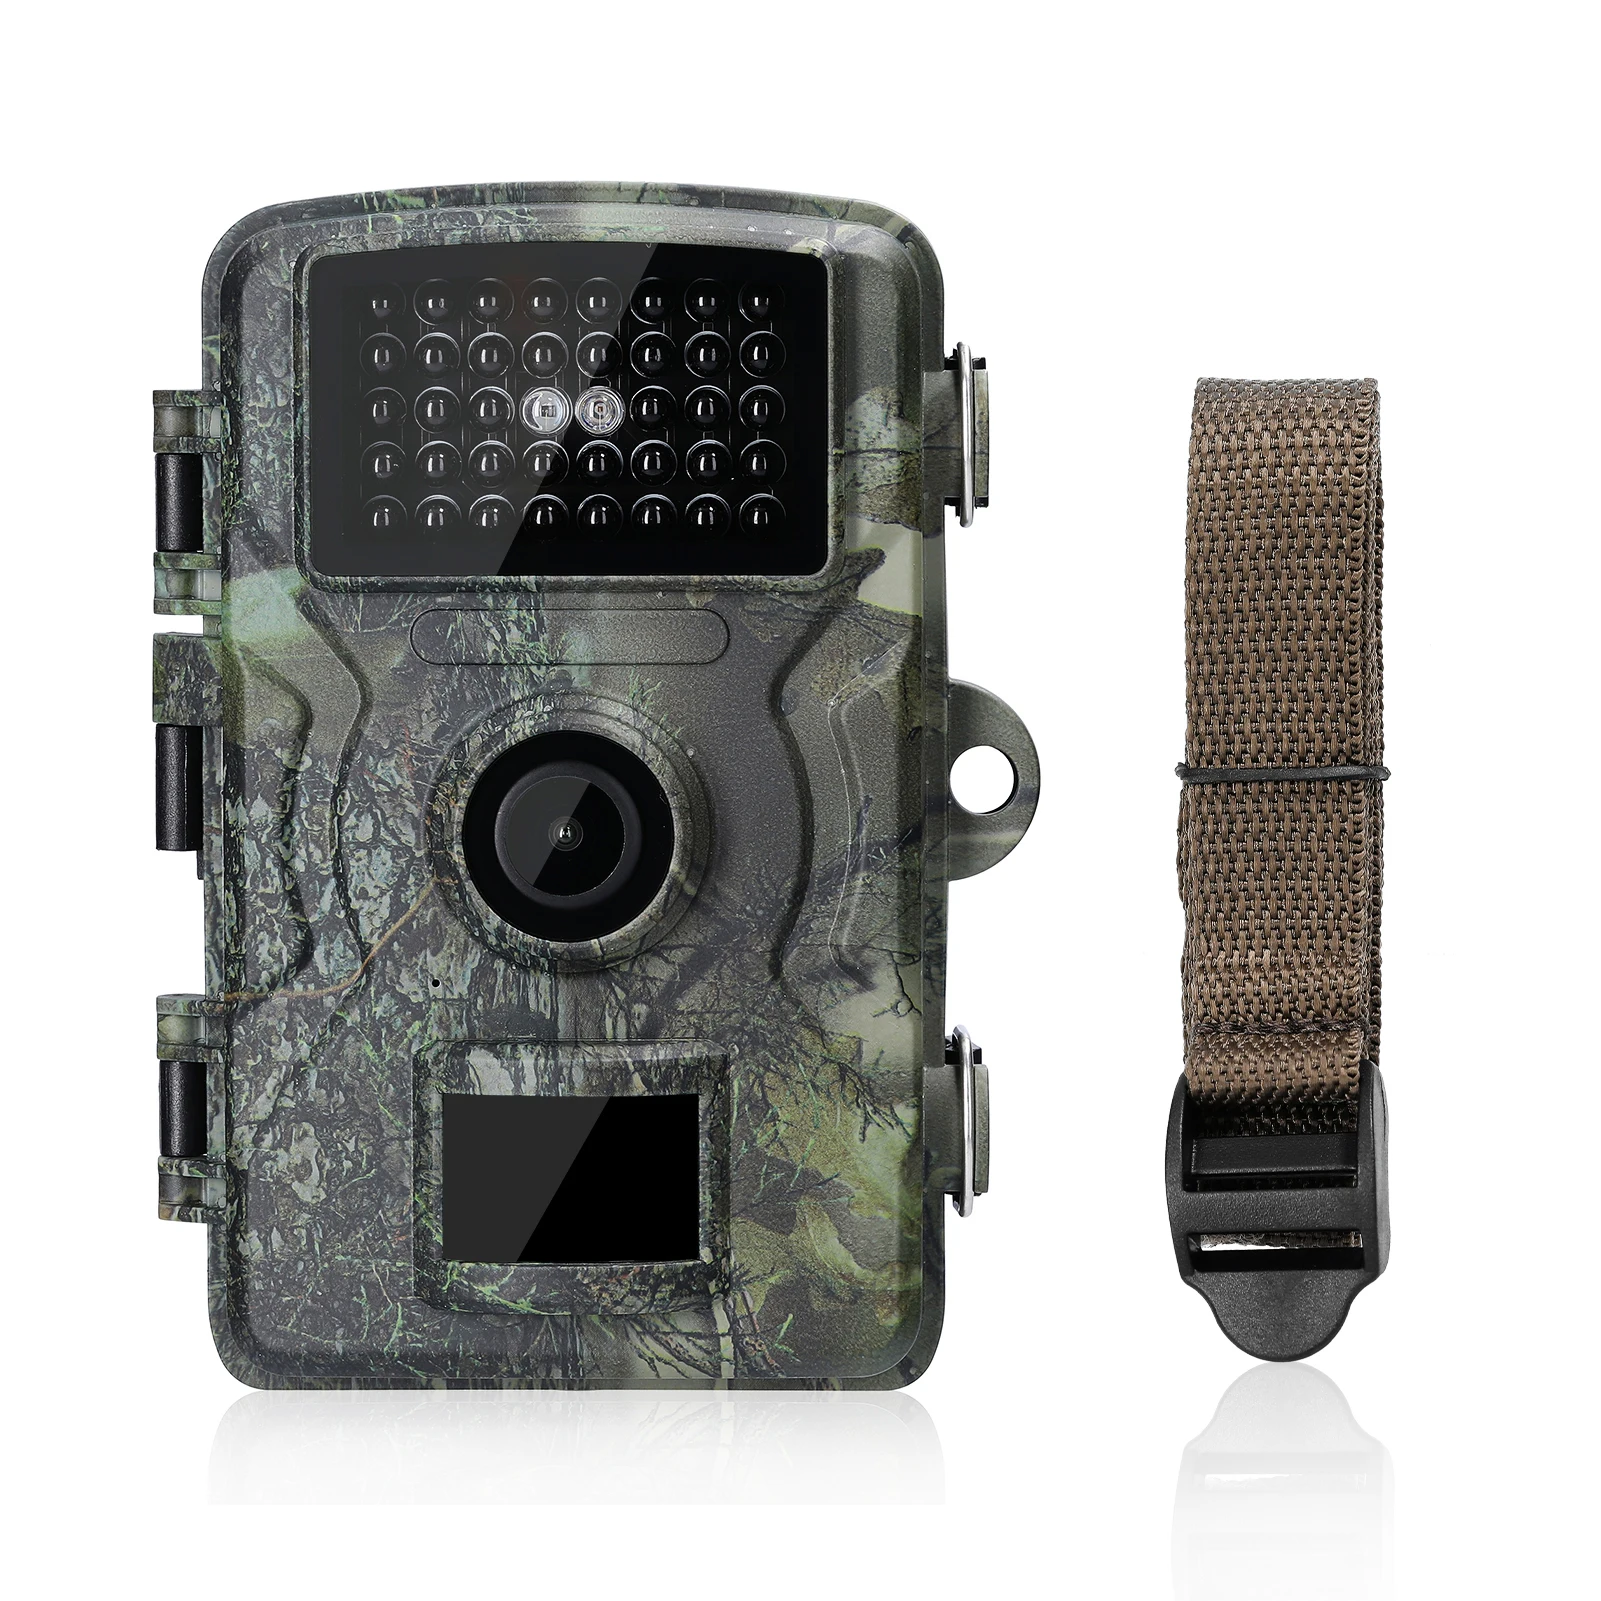 

16 МП 1080P наружная камера инфракрасная камера 2,0 дюйма TFT цветной дисплей для дневного и ночного использования камера ночного видения IP66 водонепроницаемая